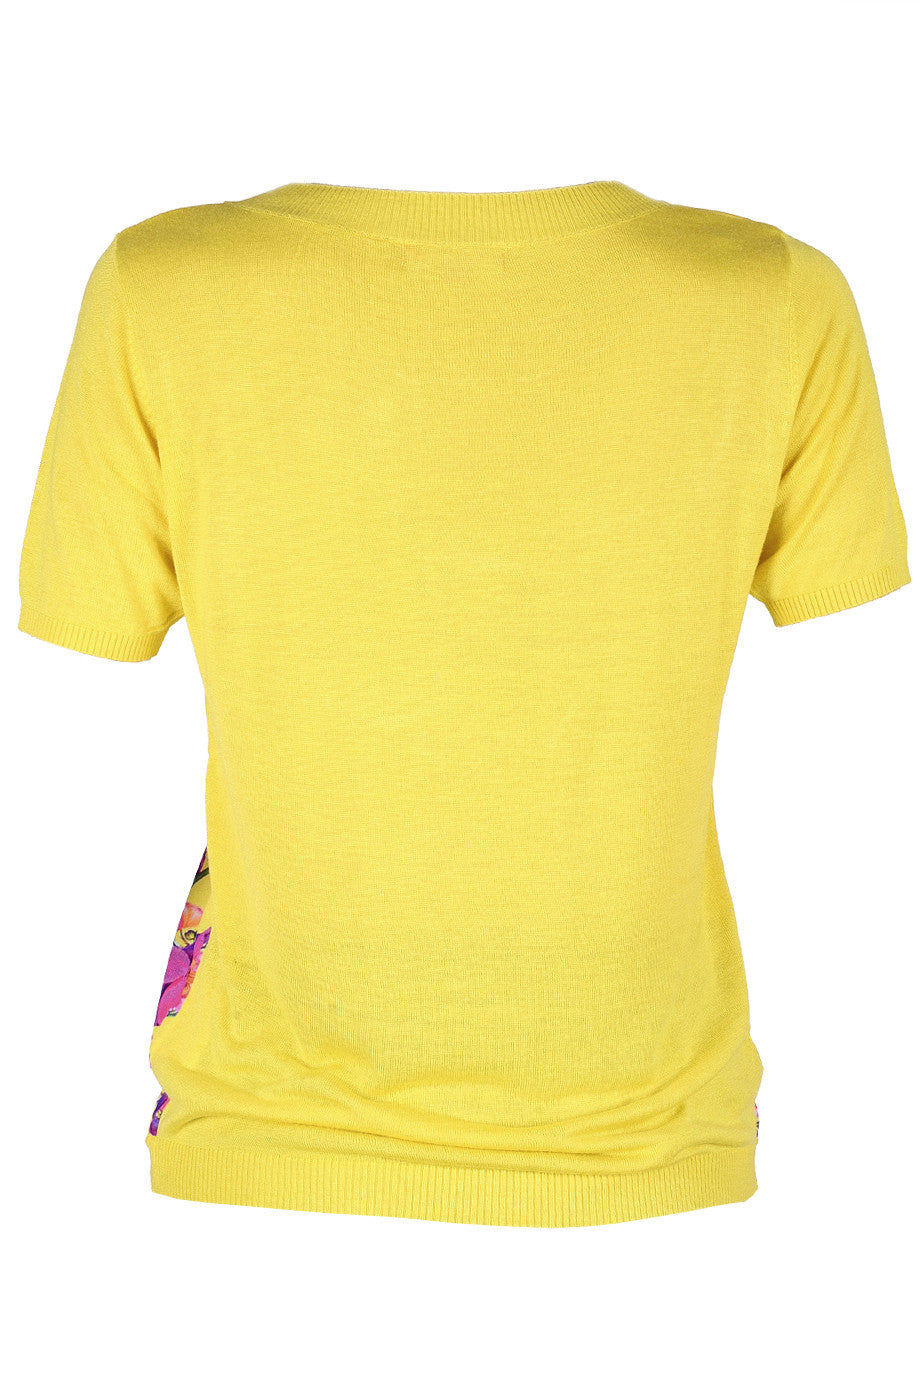 Κίτρινη Εμπριμέ Μπλούζα | Γυναικεία Ρούχα